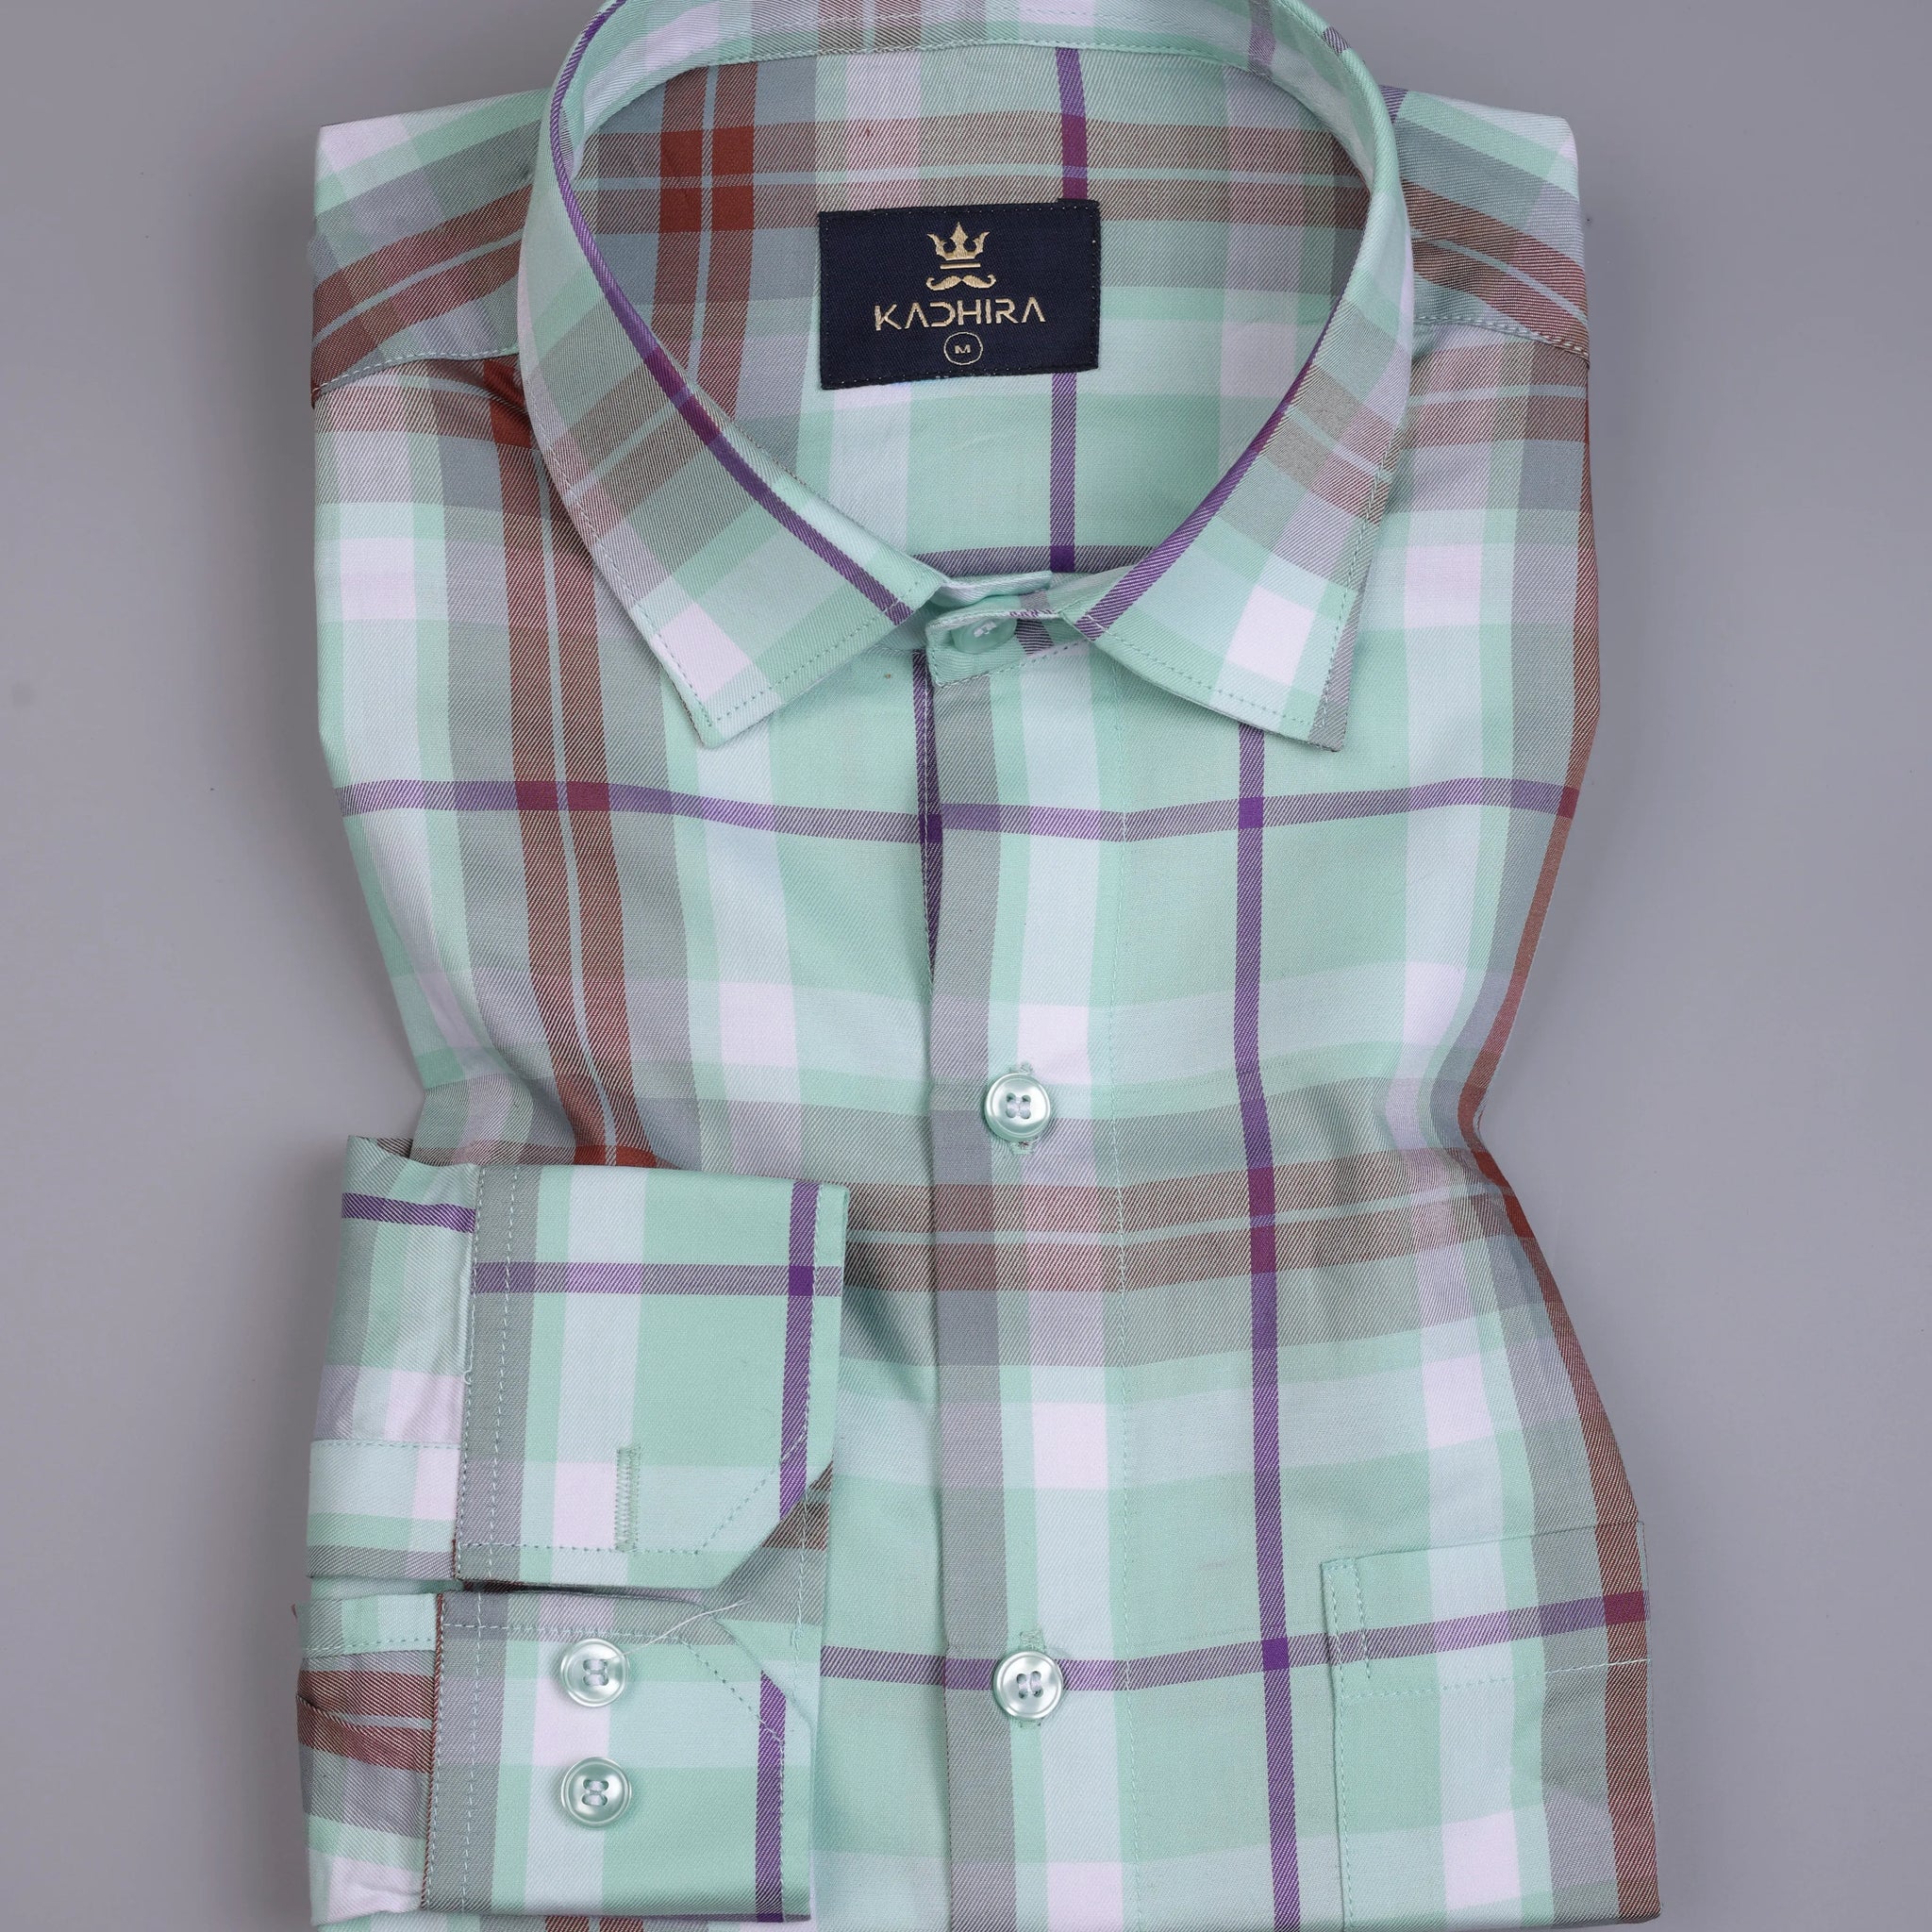 Light Cyan With Multi-colored Plaid Patterns Premium Giza Cotton Shirt